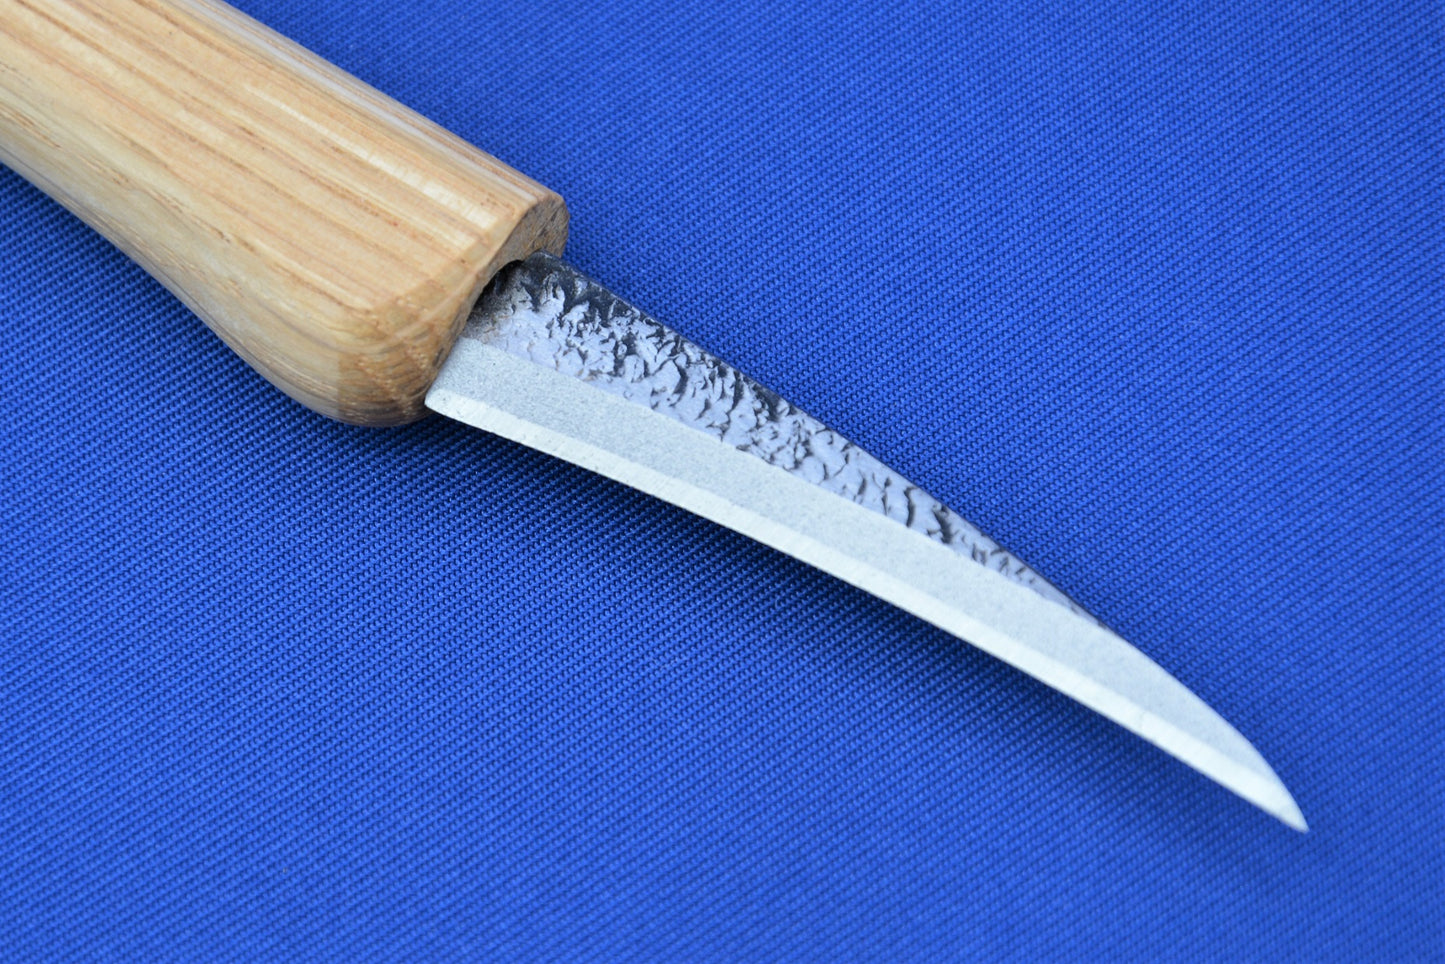 Wood Carving Knife - Talon